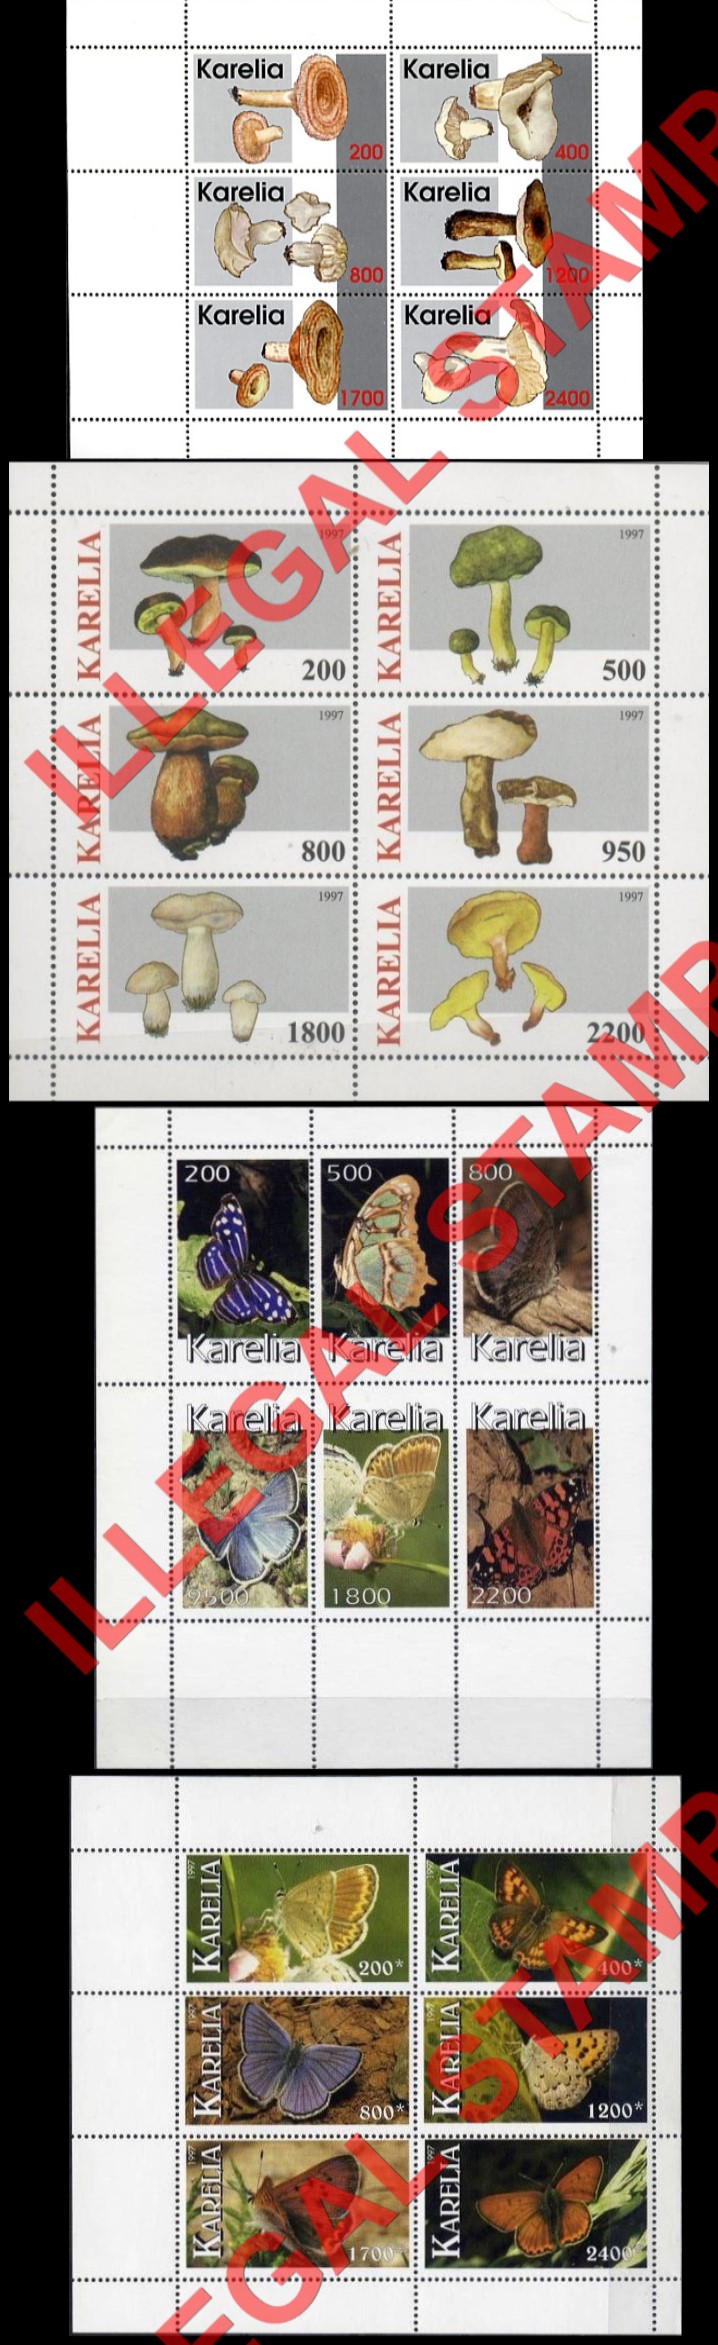 Republic of Karelia 1997 Illegal Stamps Part 2)